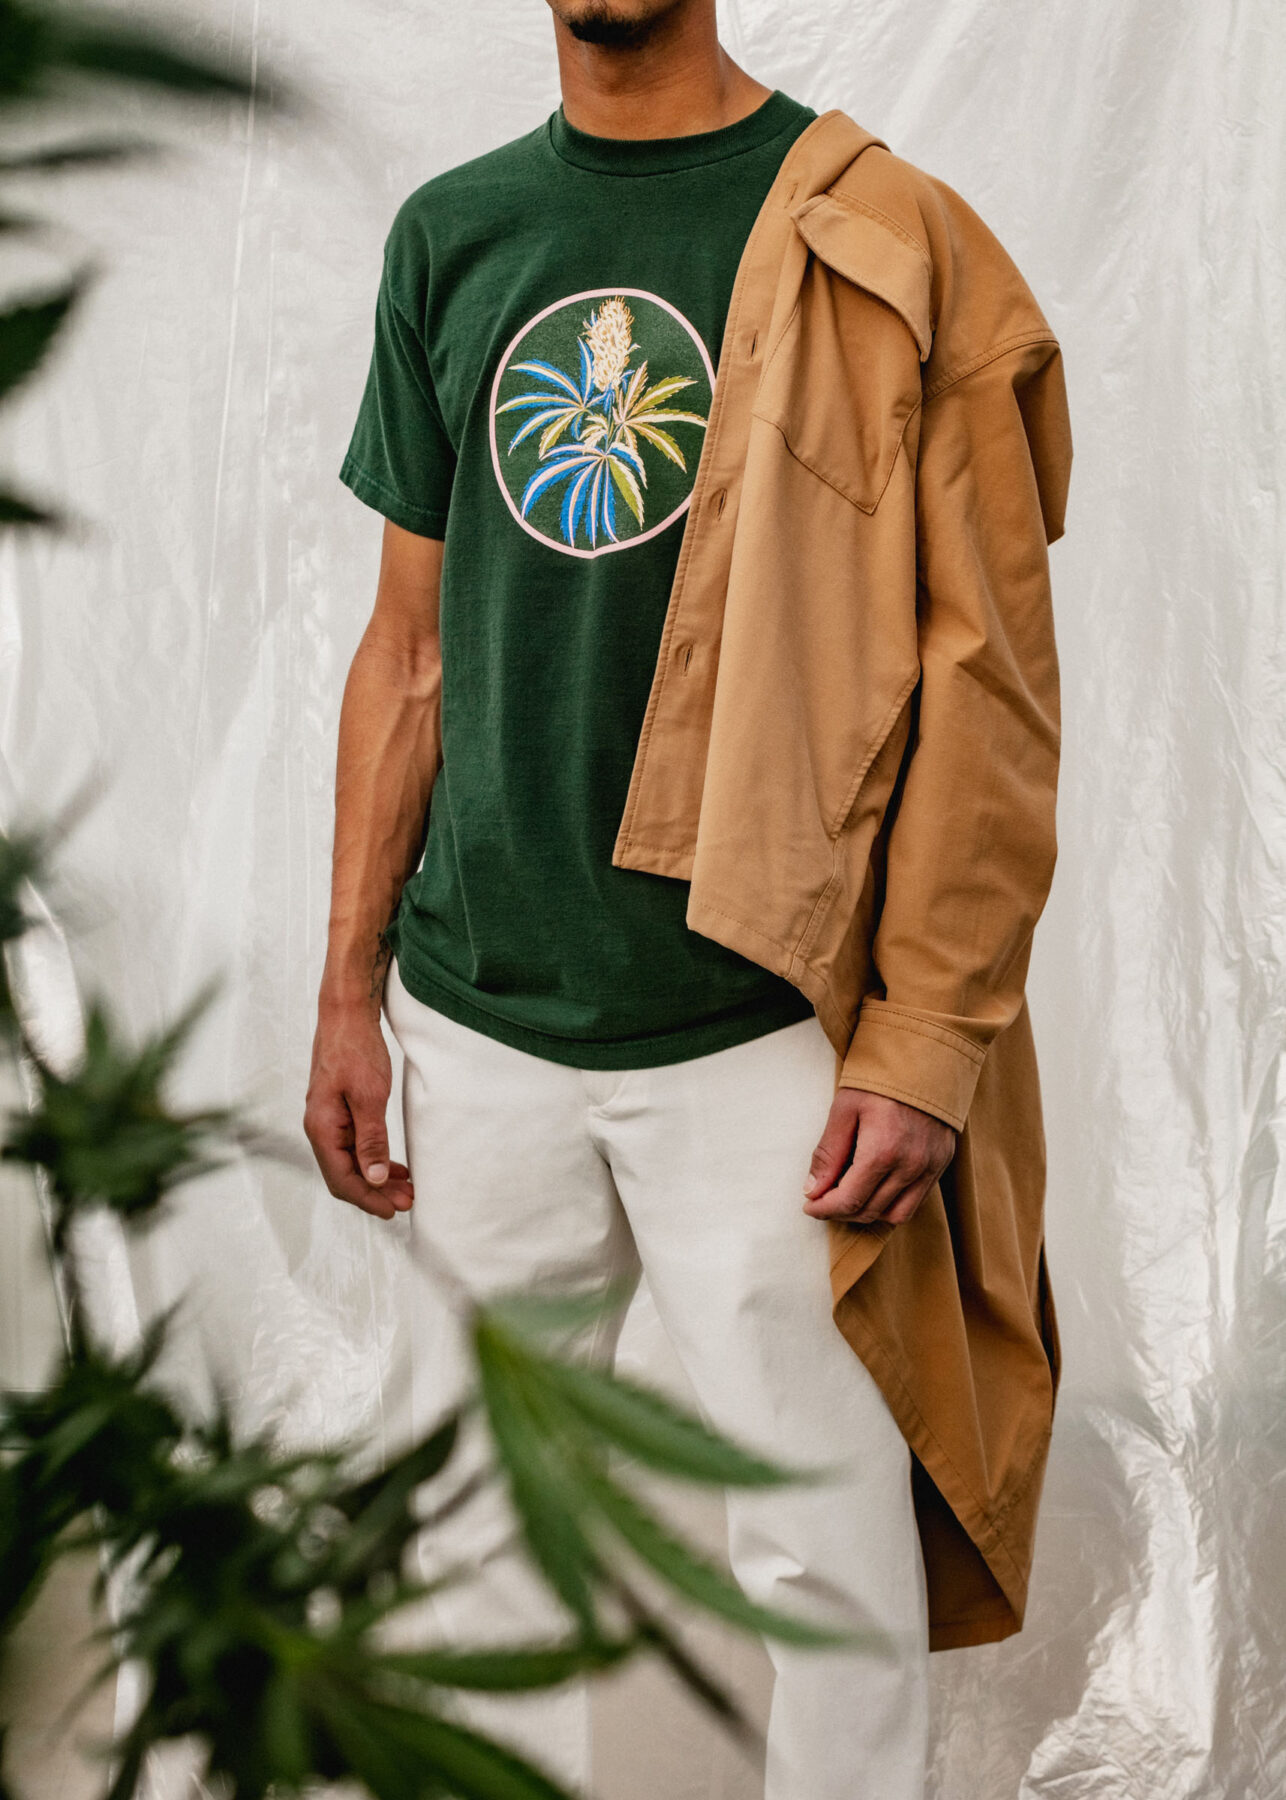 model wearing Flowerhood garments in greenhouse